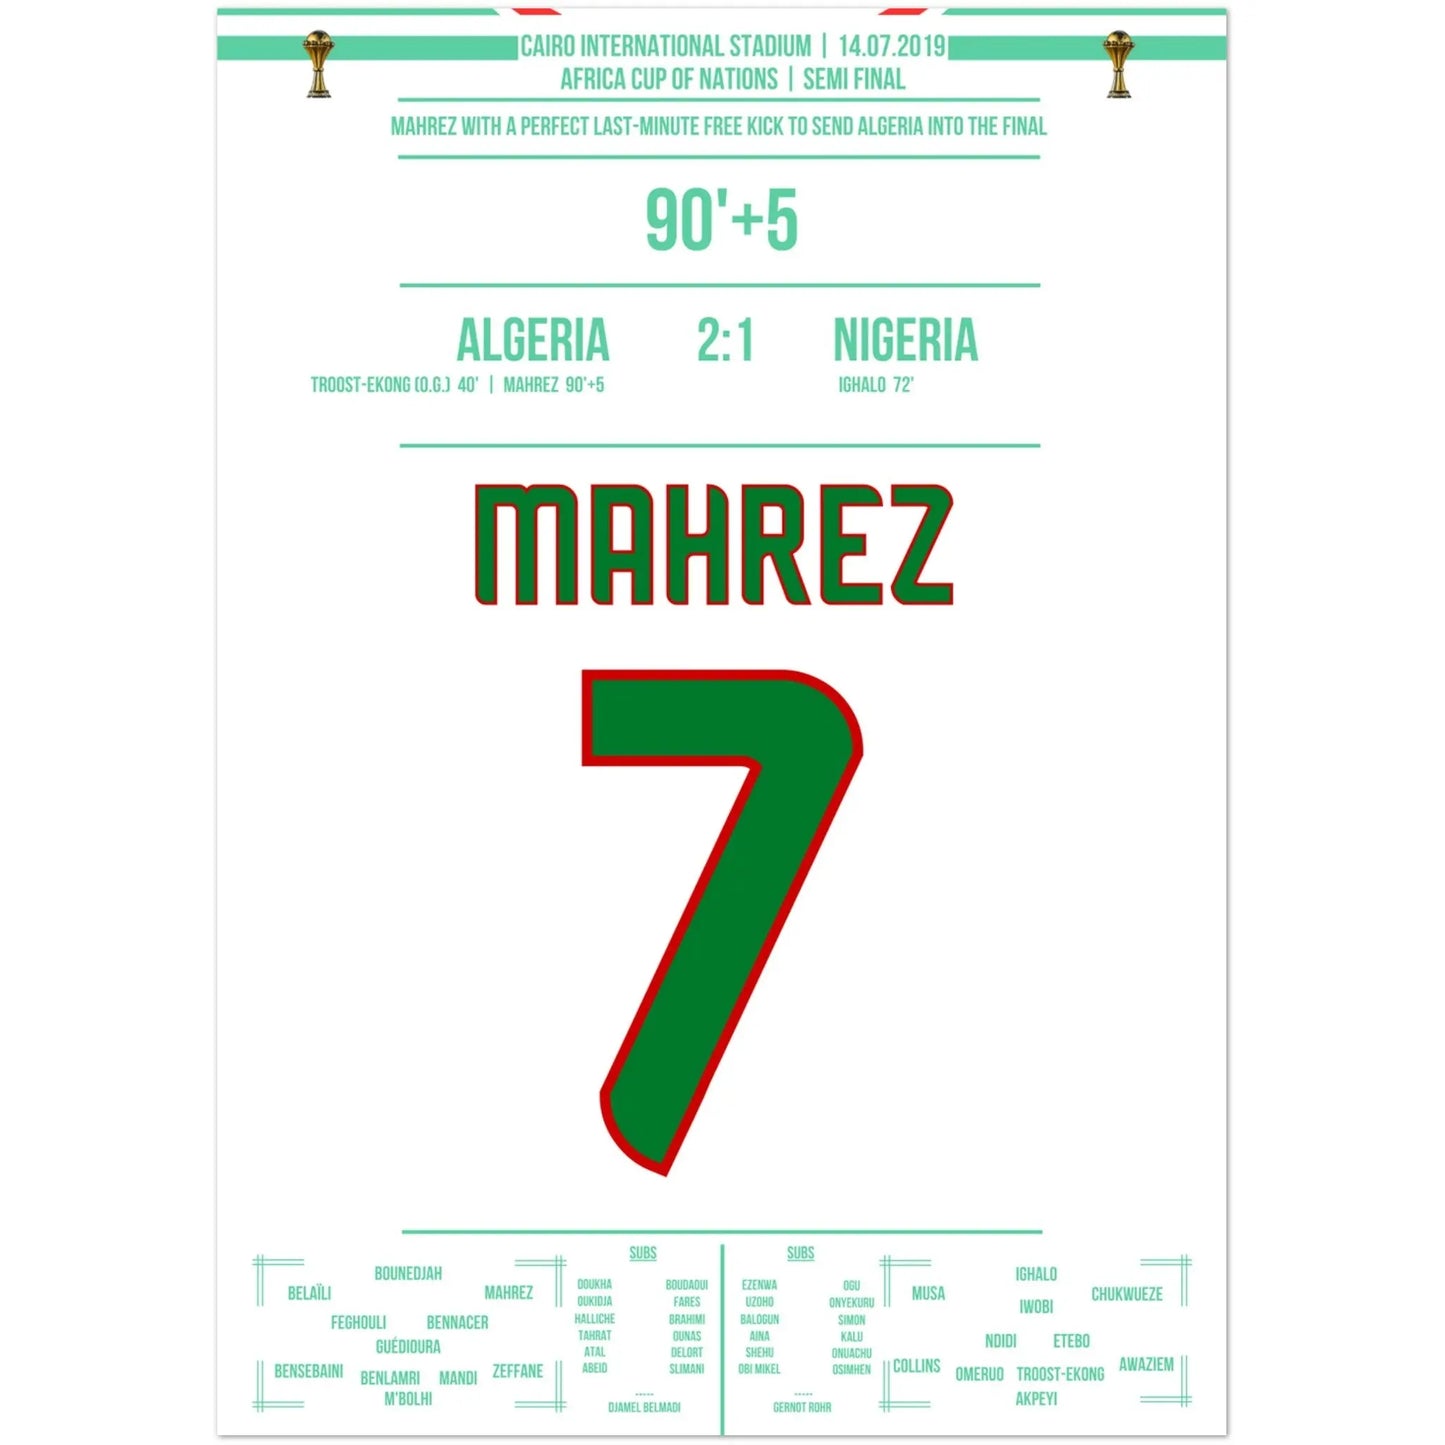 Le coup franc rêvé de Mahrez dans la dernière minute de la demi-finale de la Coupe d'Afrique des Nations